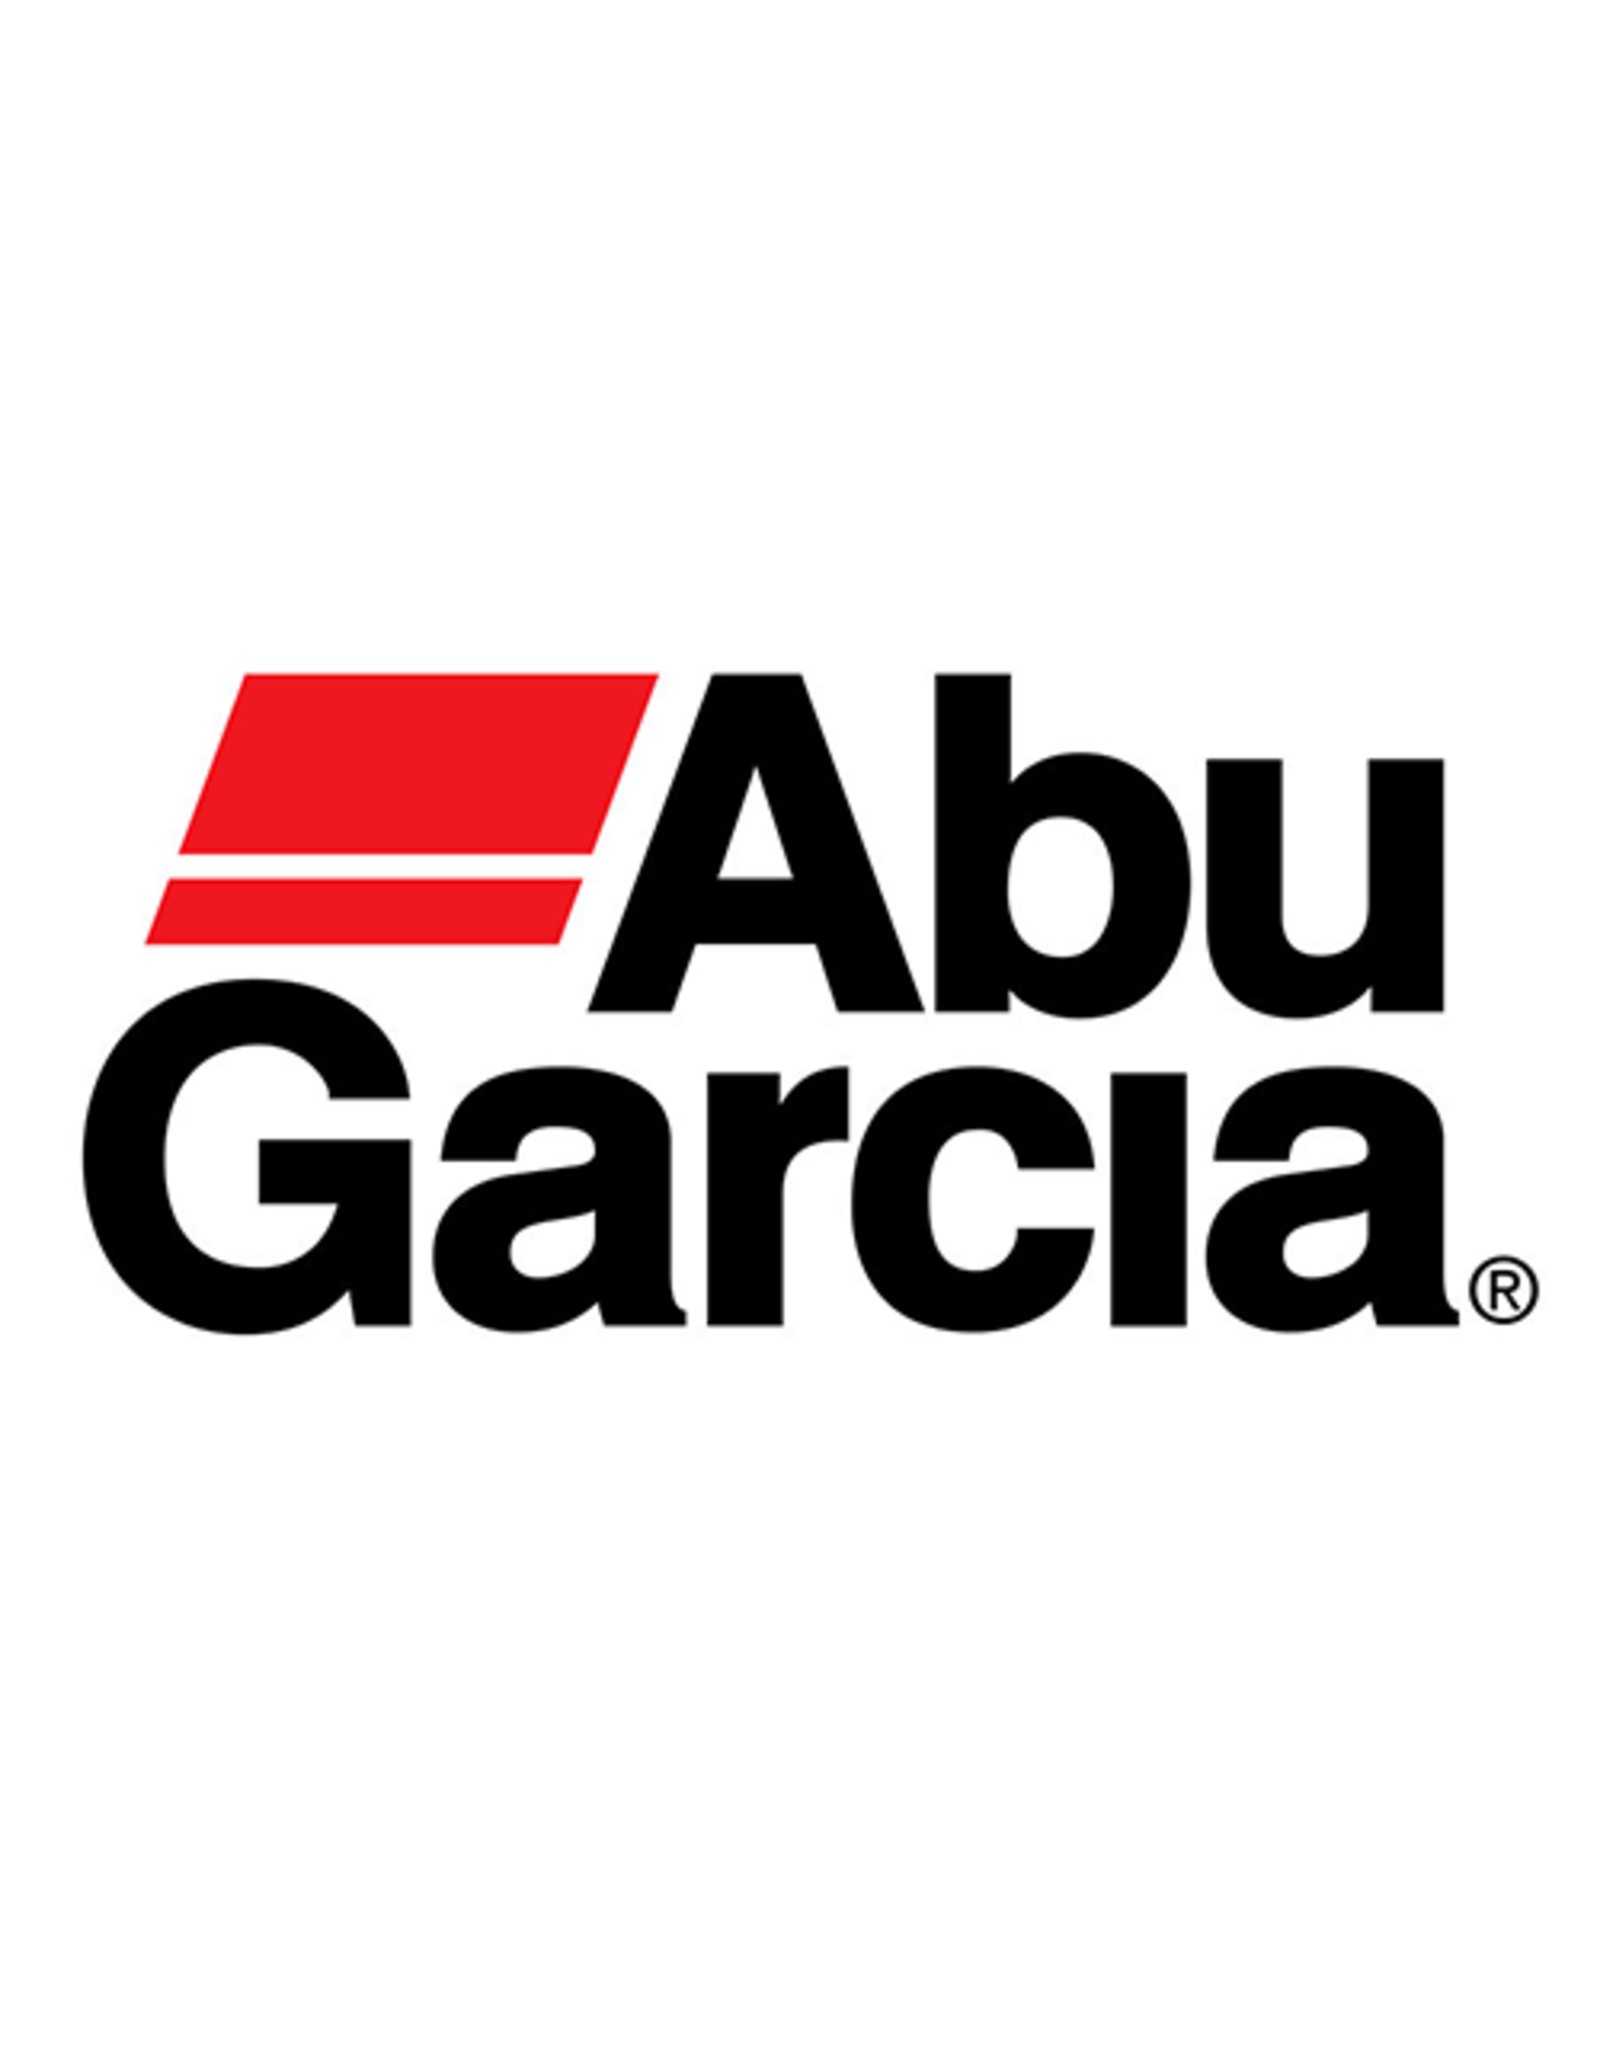 Abu Garcia 6936  CLUTCH SPRING